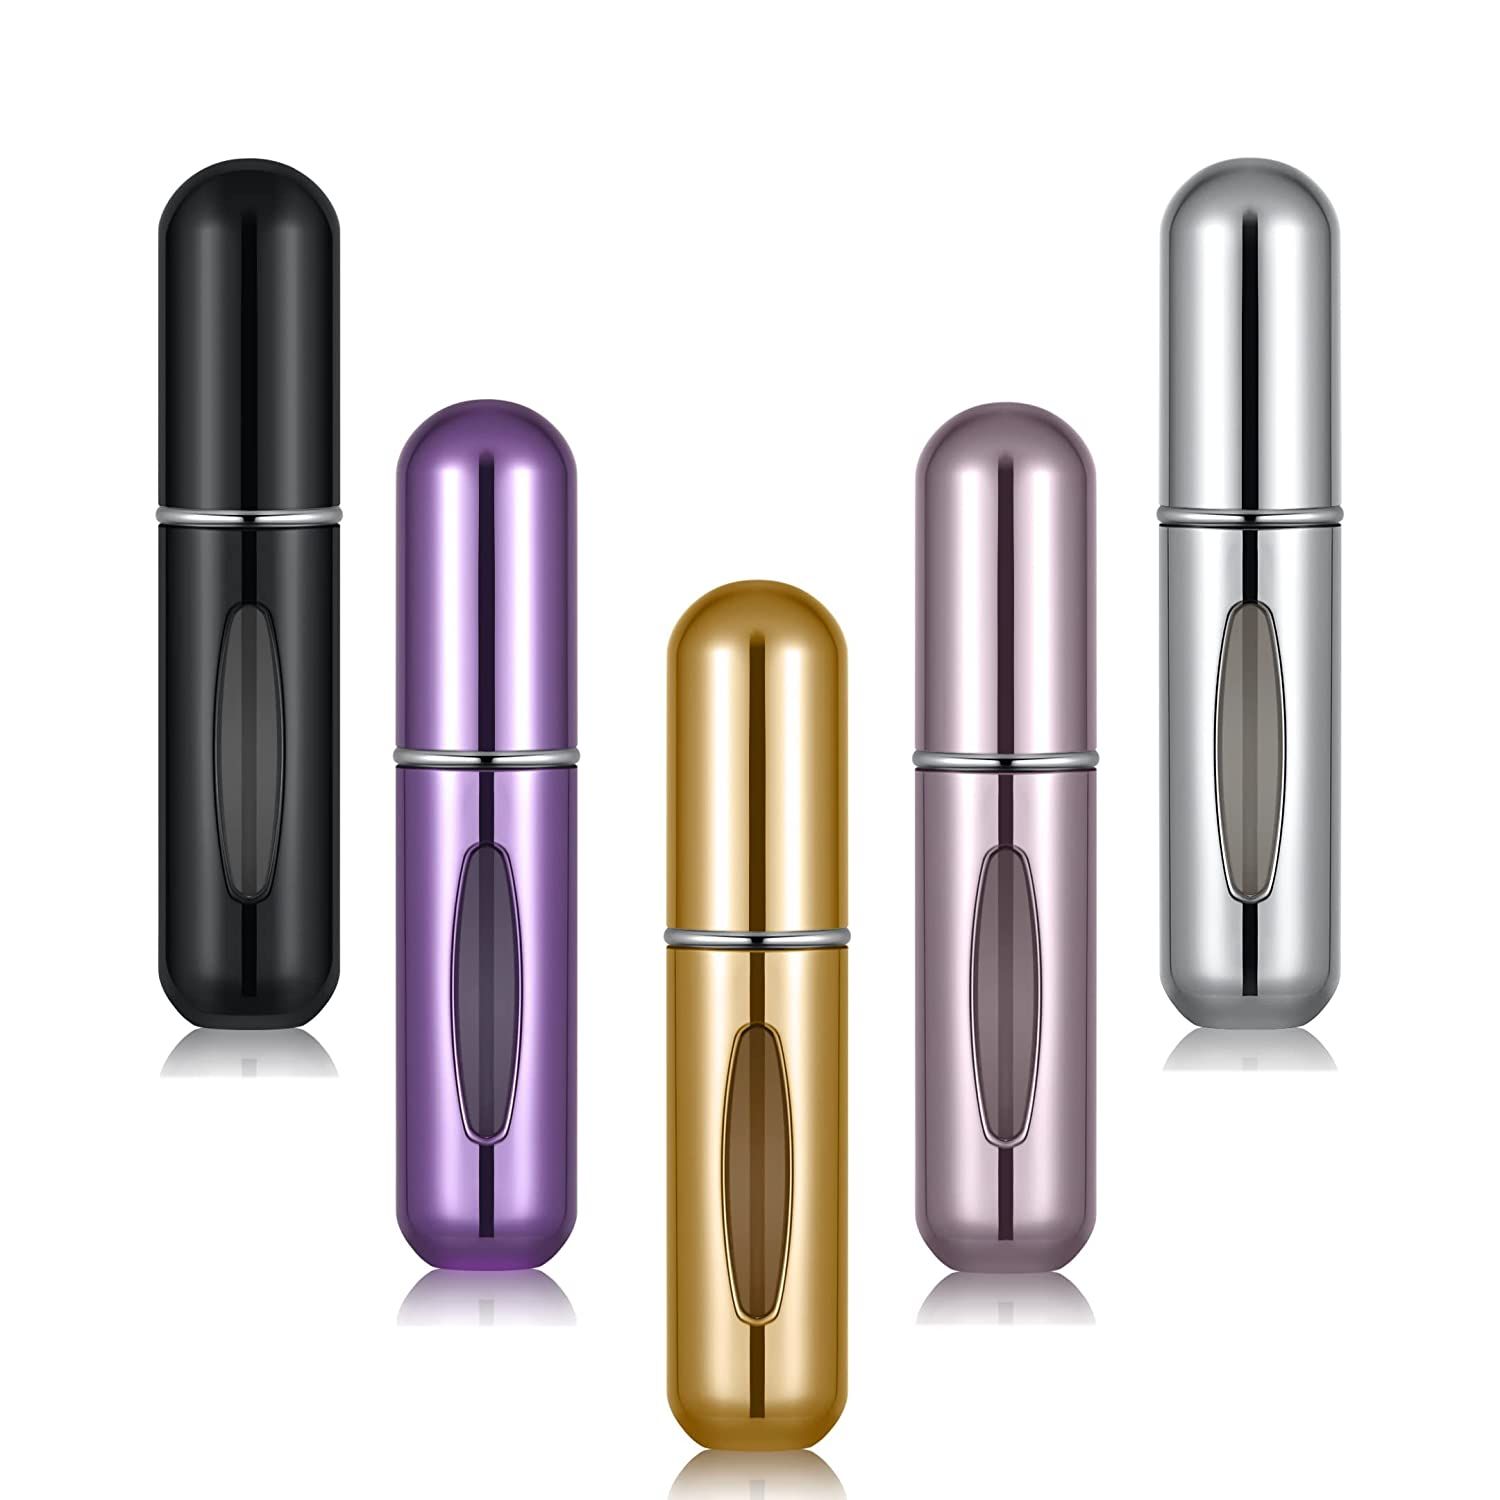 Portable Mini Refillable Perfume Atomizer Bottle Atomizer Travel Size Spray Bottles Accessories 5... | Amazon (US)